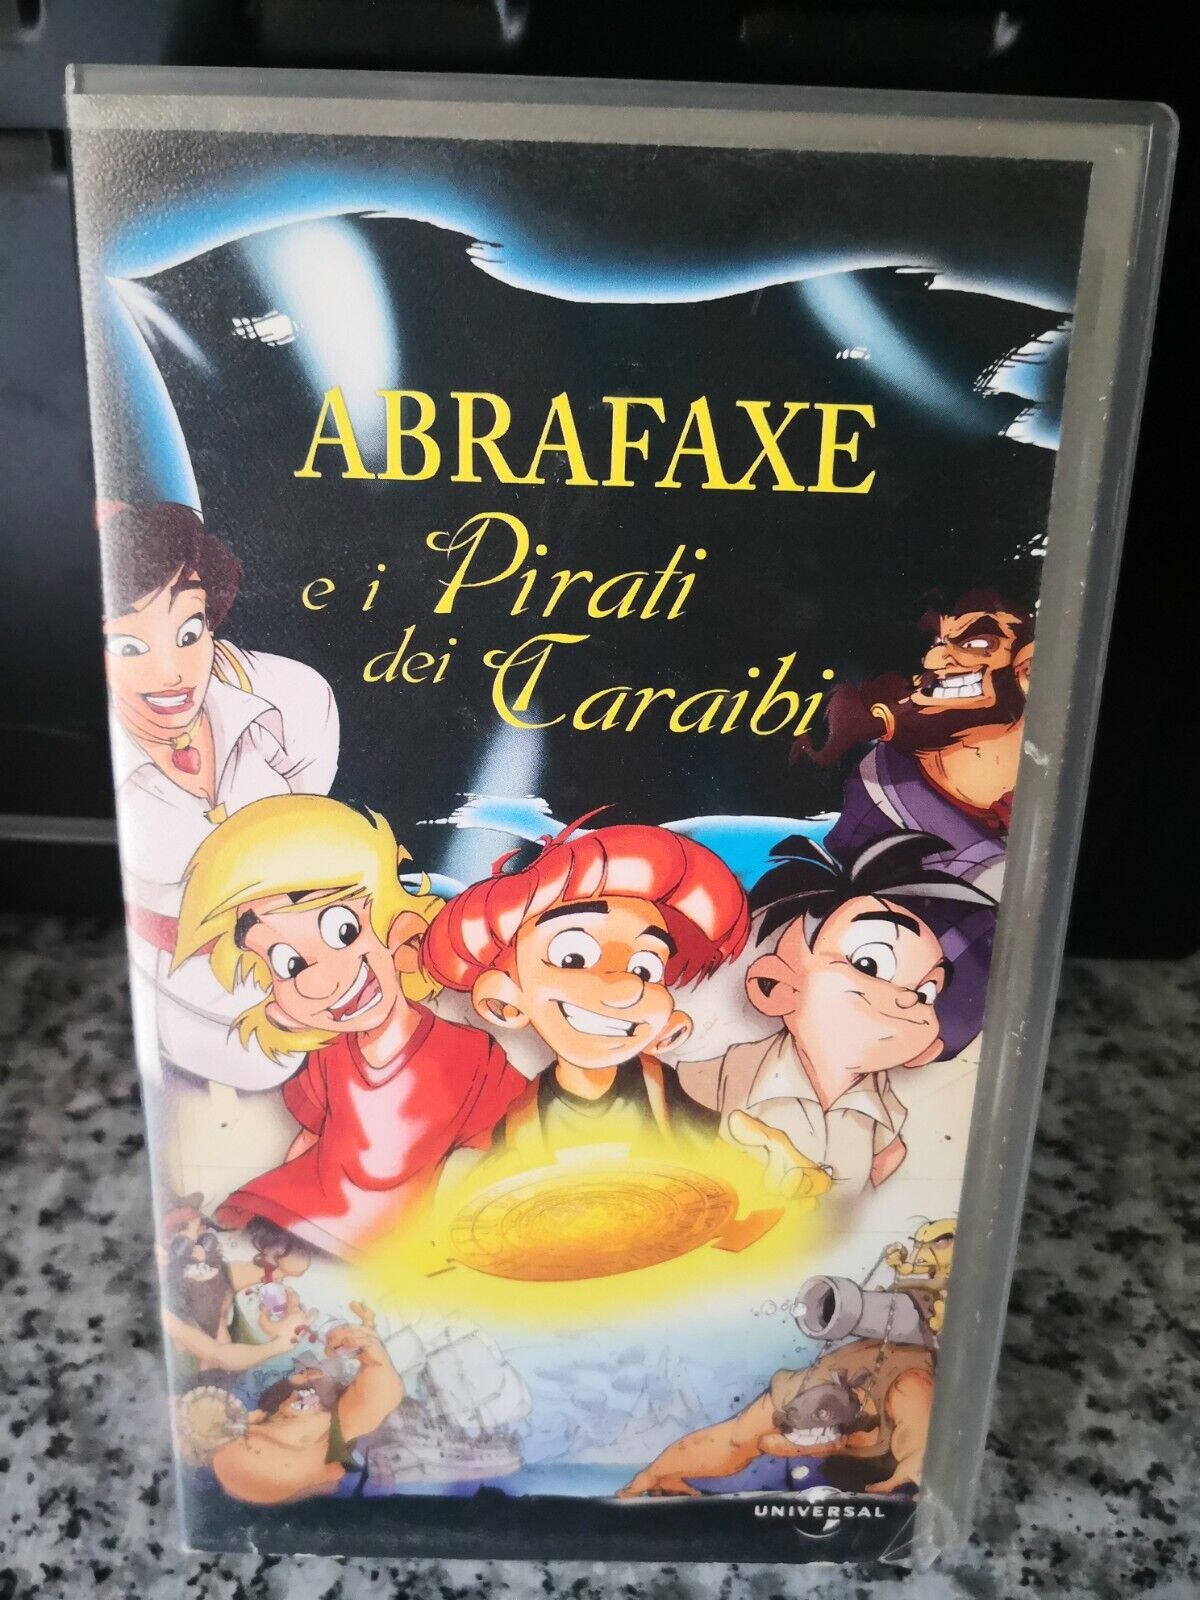  Abrafaxe-e-i-pirati-dei-Caraibi - vhs - 2002 - Universal -F